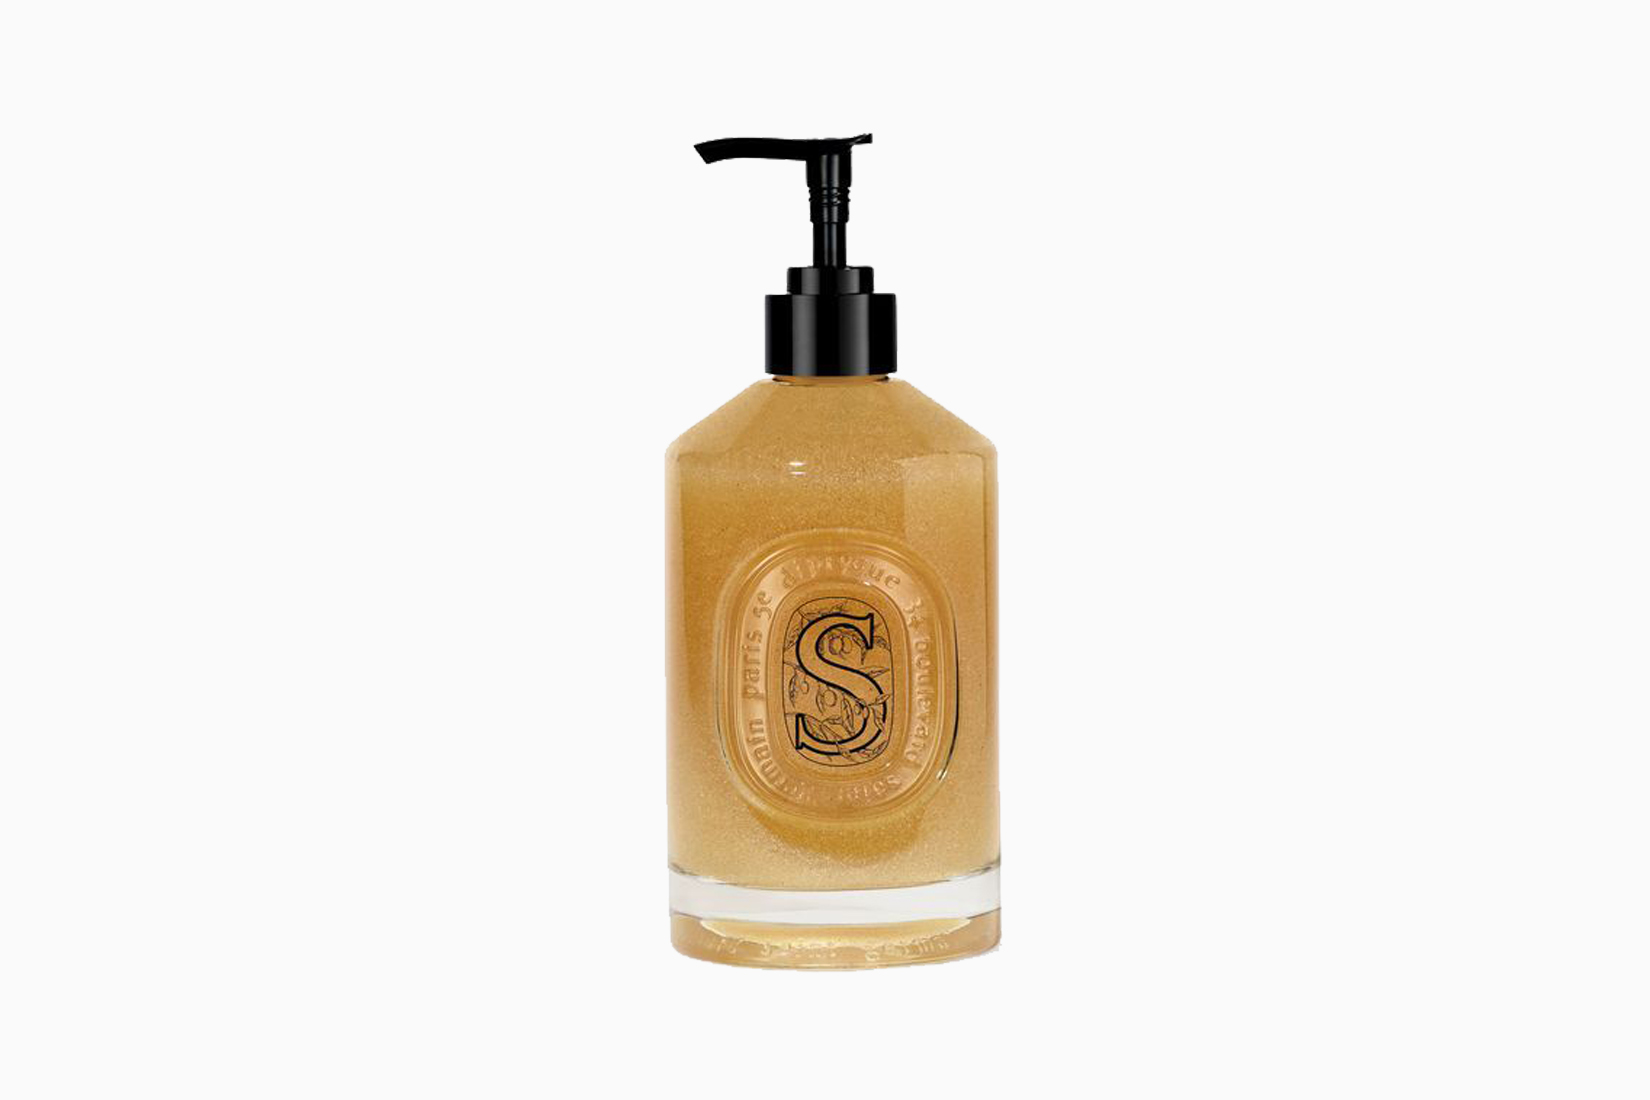 Le meilleur savon pour les mains de Diptyque - Luxe Digital